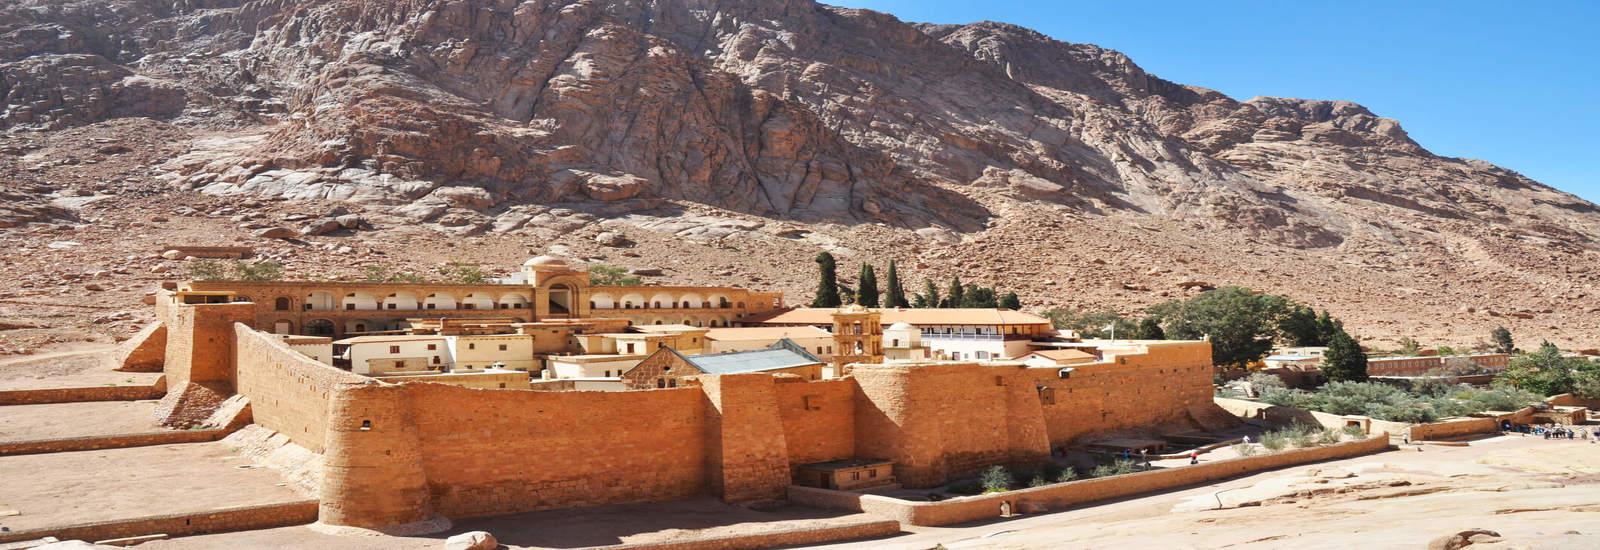 Tour to Saint Catherine monastery from Eilat (Sinai Mountain)